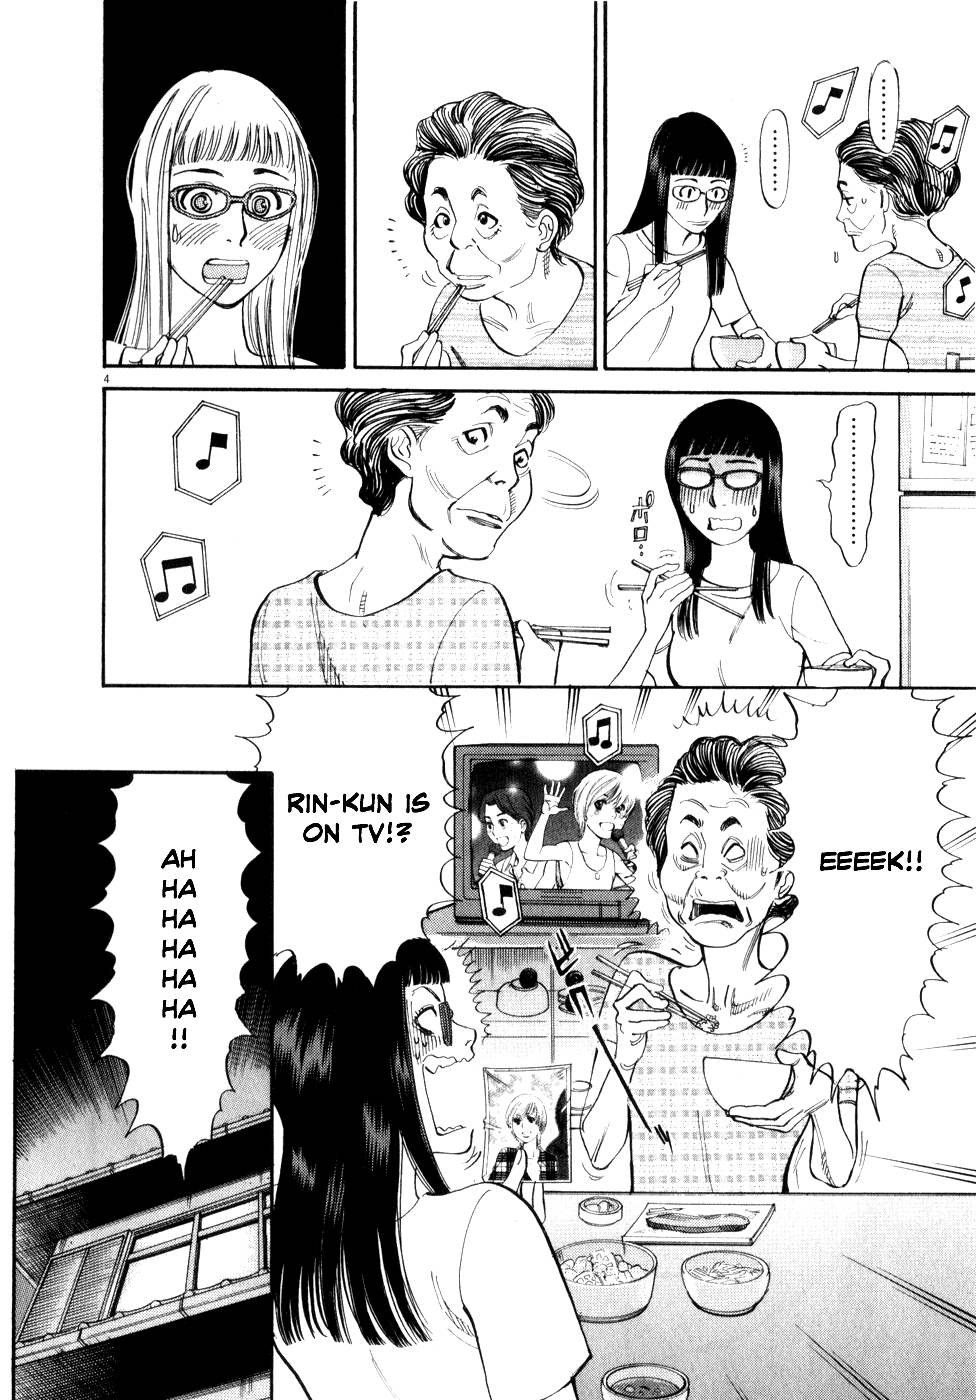 Kono S o, Mi yo! Cupid no Itazura Vol. 6 Ch. 52 Chizuru's Memories III